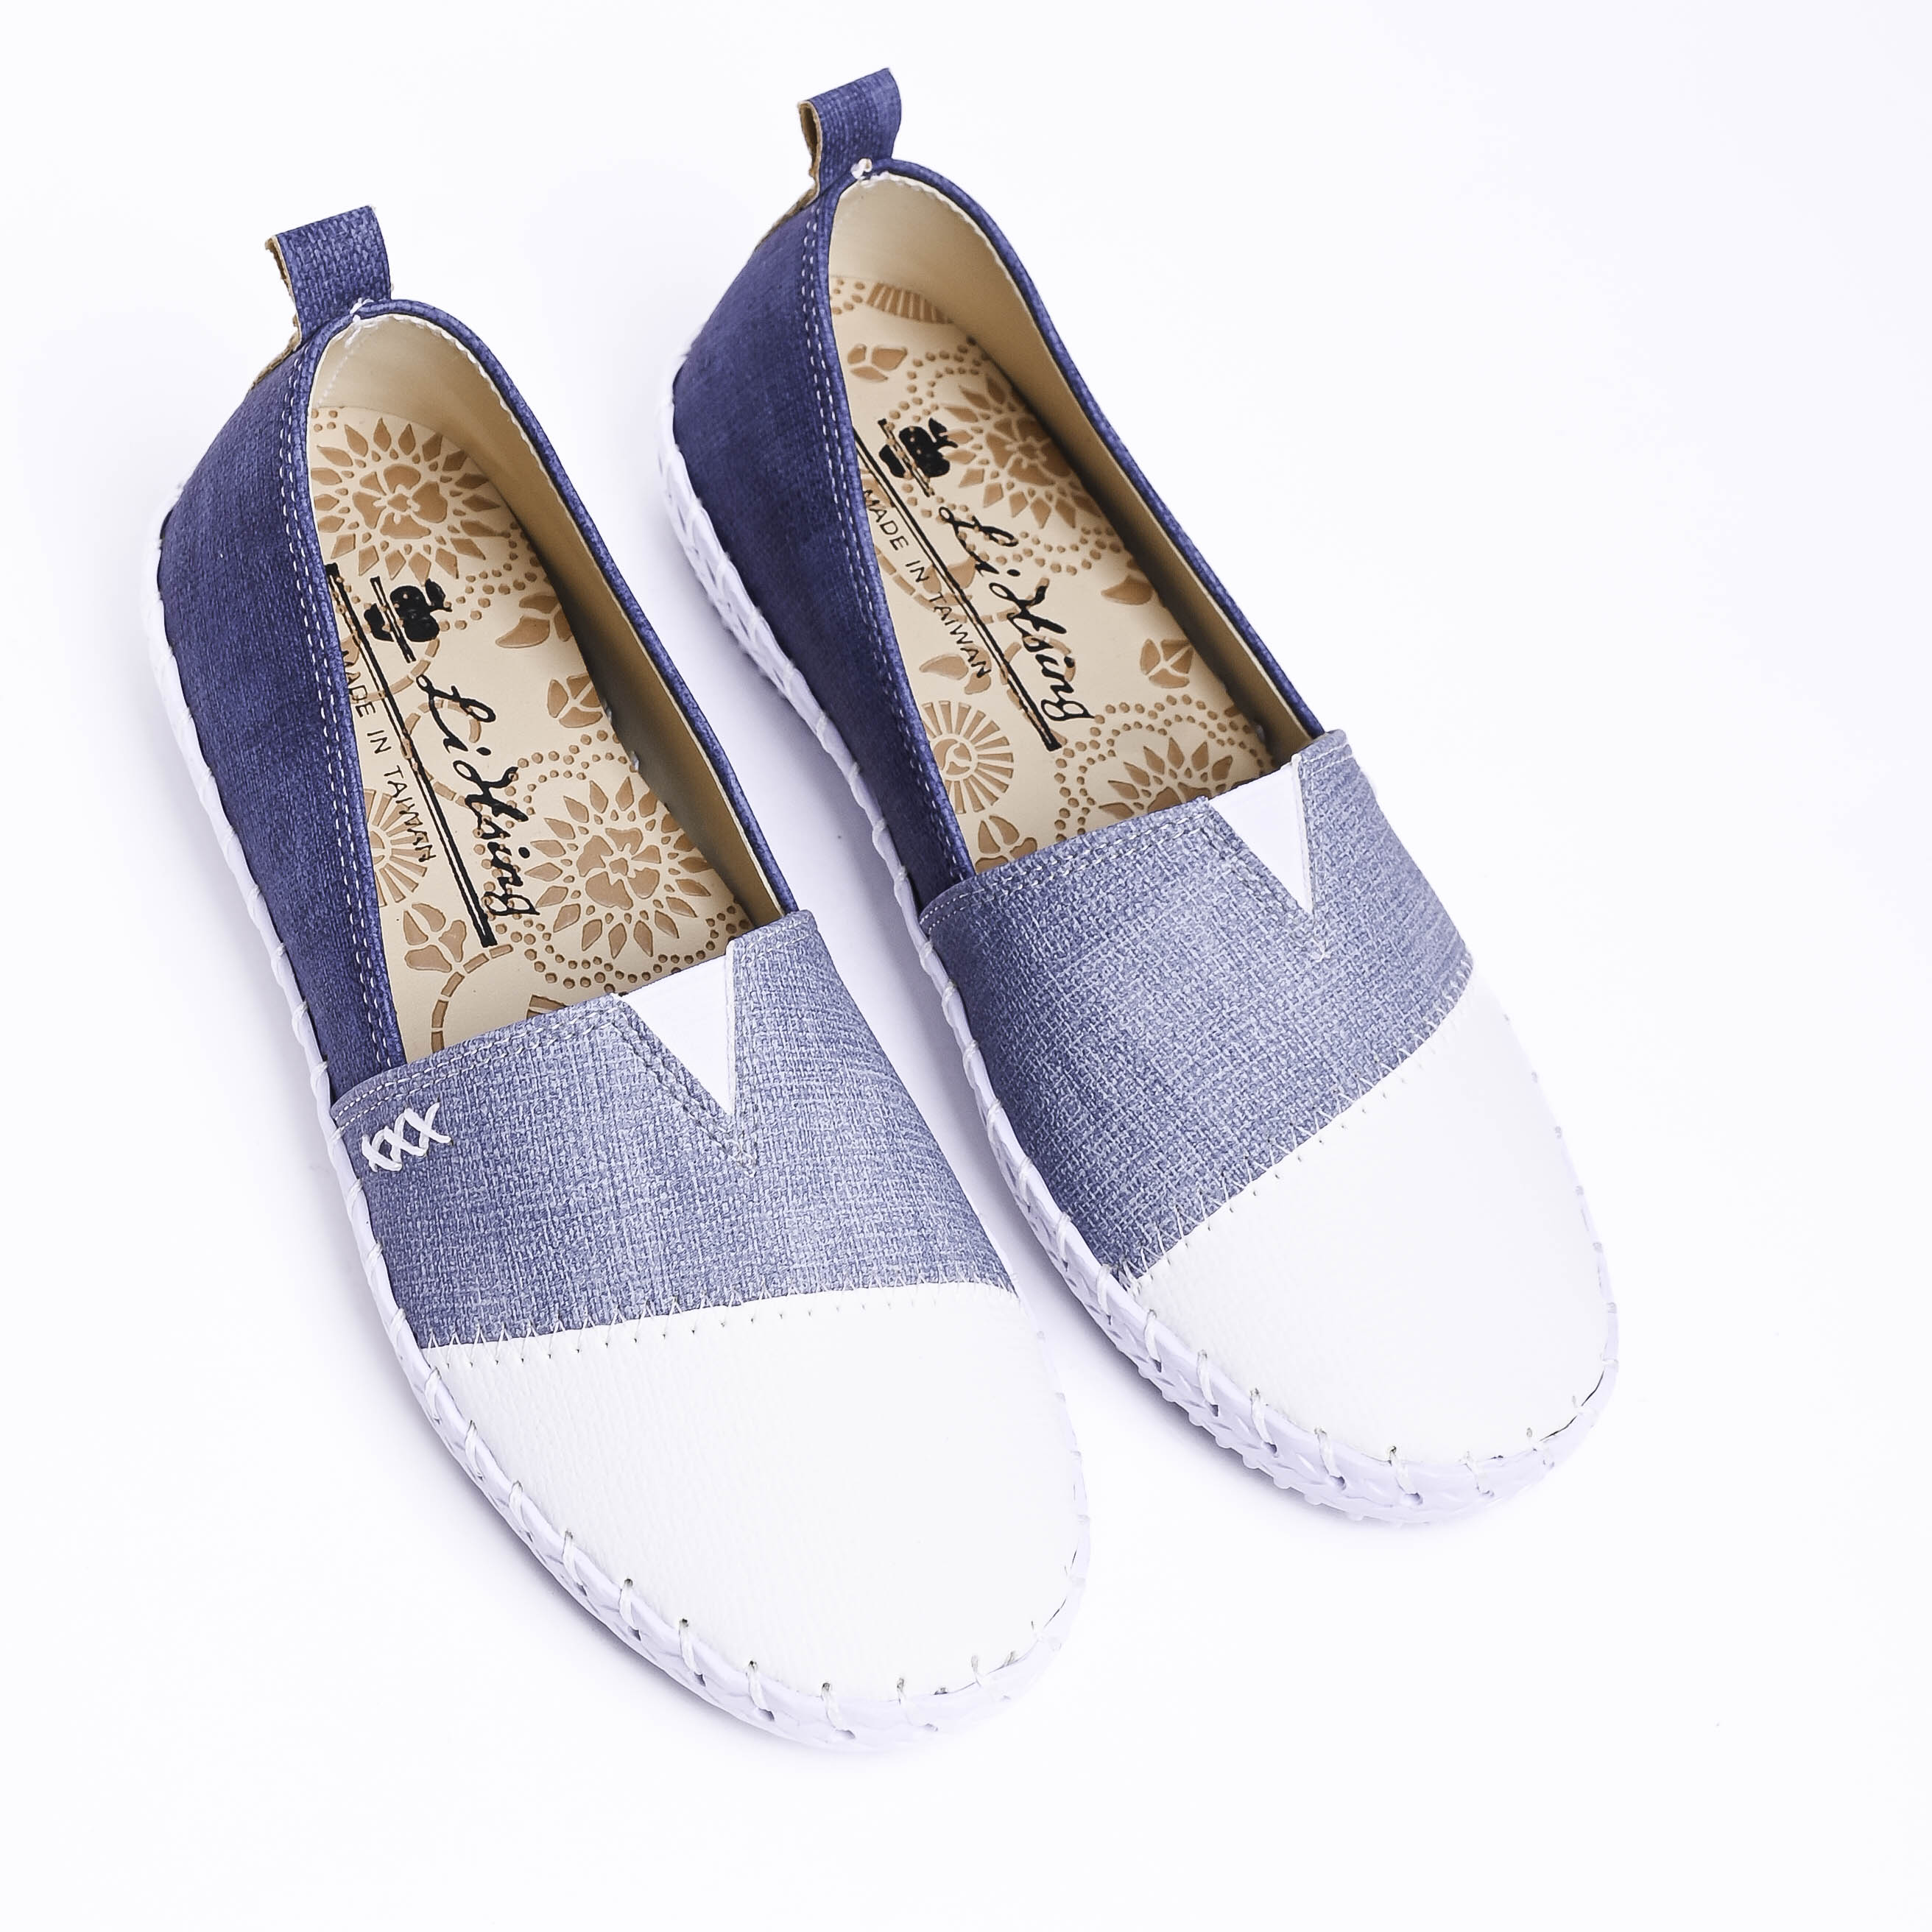 Giày Bít Lihsing nữ nhập khẩu Đài Loan (size 35-39)